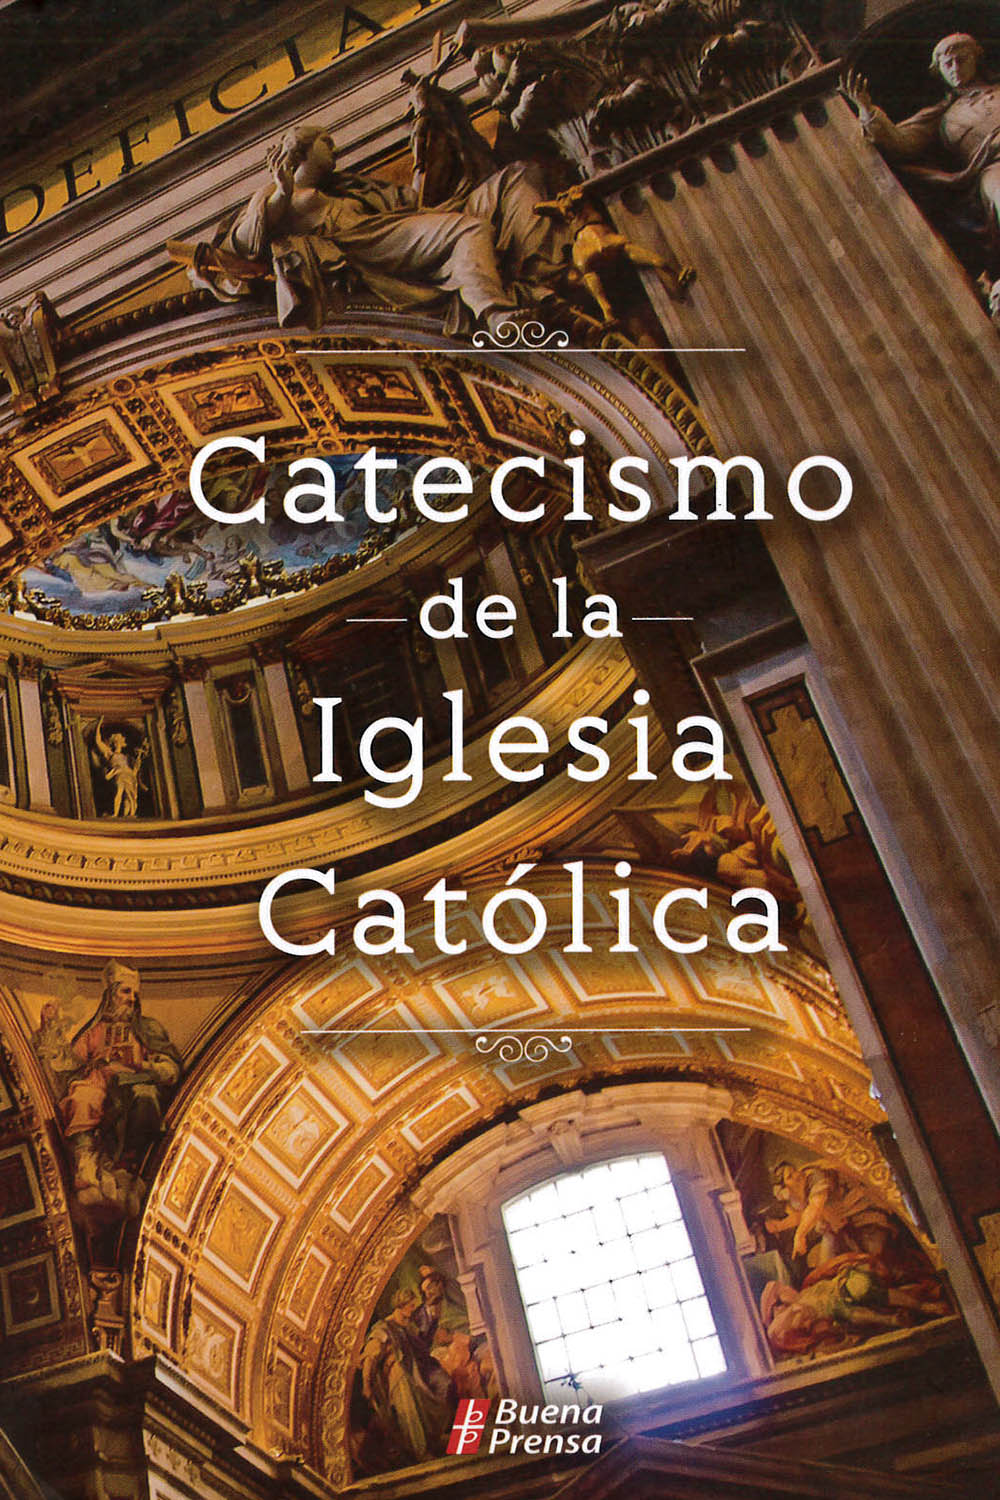 4 / 26 - BX1918 C38 2016 Catecismo de la Iglesia Católica - Buena Prensa, México 2016